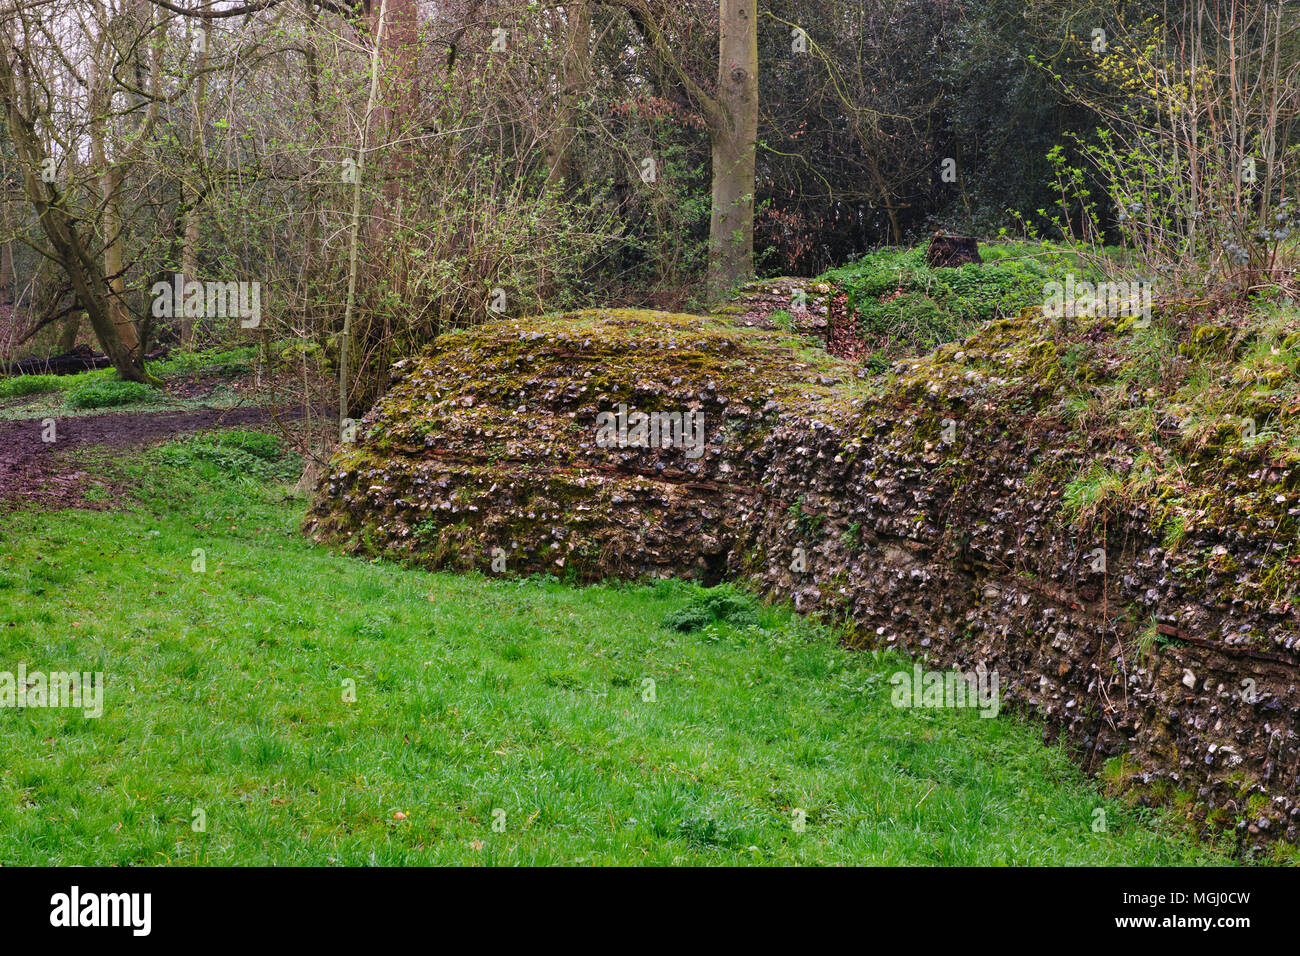 Voir l'angle sud-ouest de la bastion de la deux milles de long mur romain AD265-70 construit pour défendre la ville de Verulamium (St Albans), Angleterre, Royaume-Uni. Banque D'Images